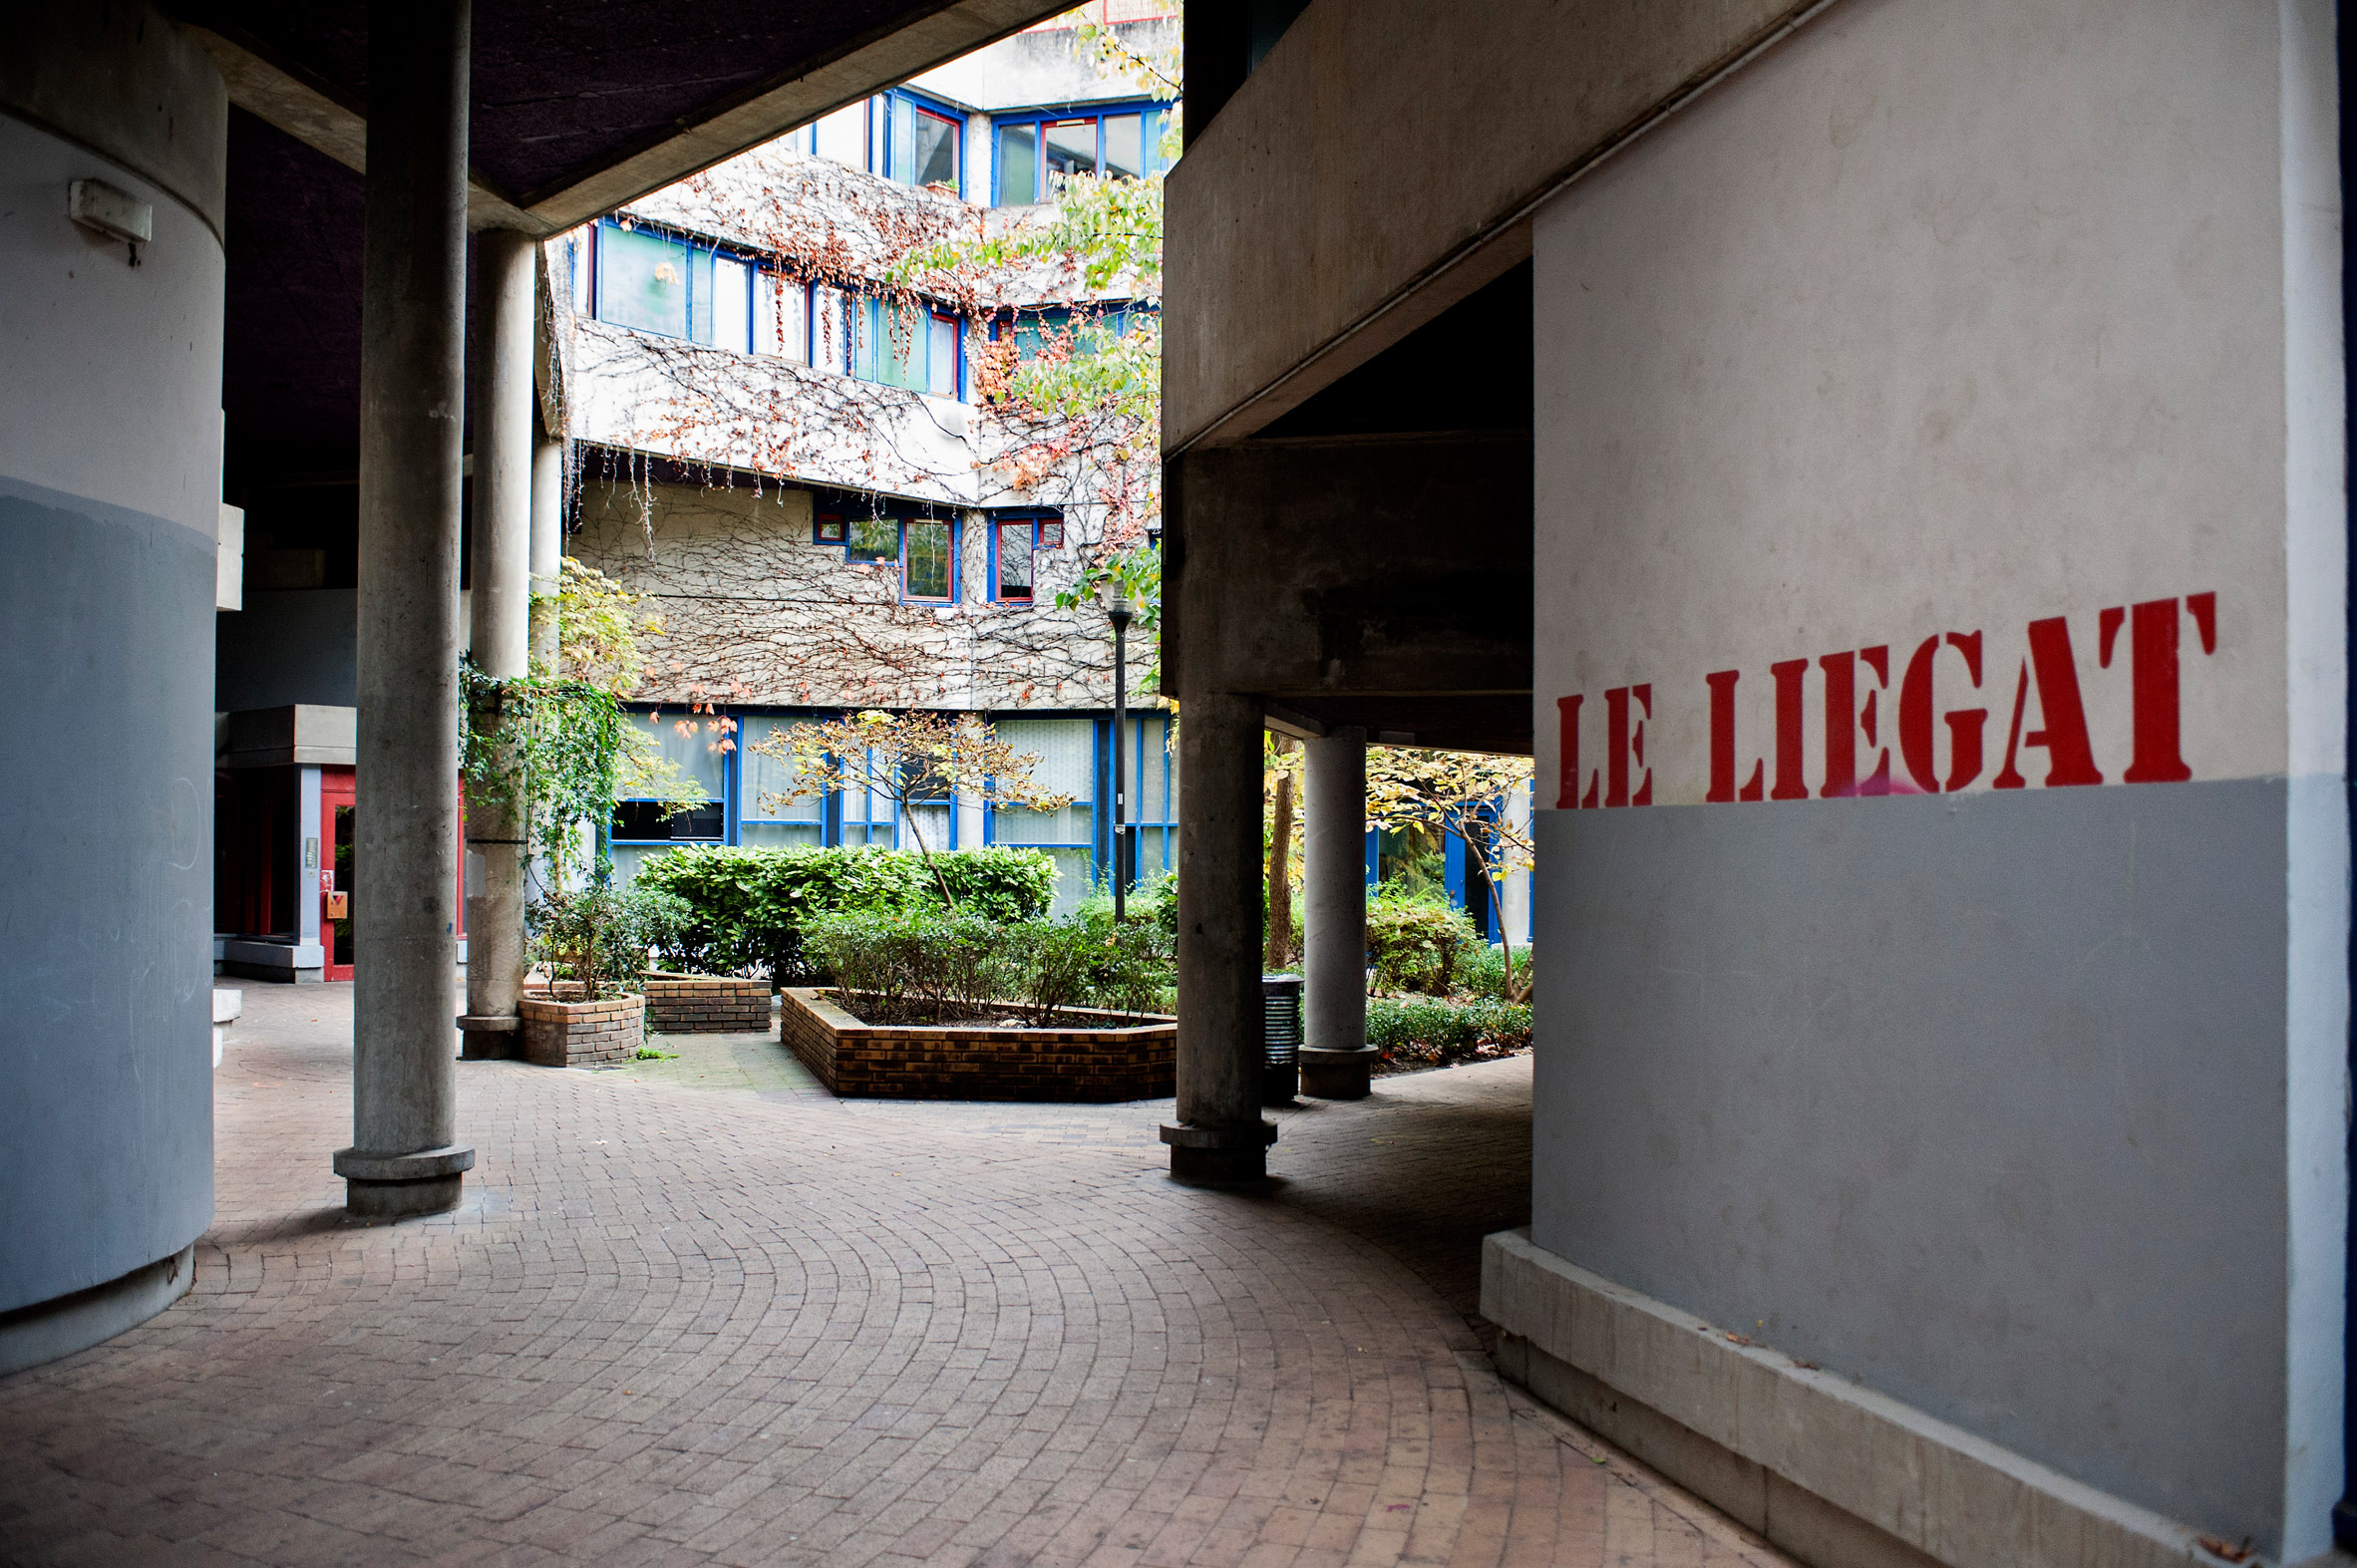 Le Liegat apartment building exterior